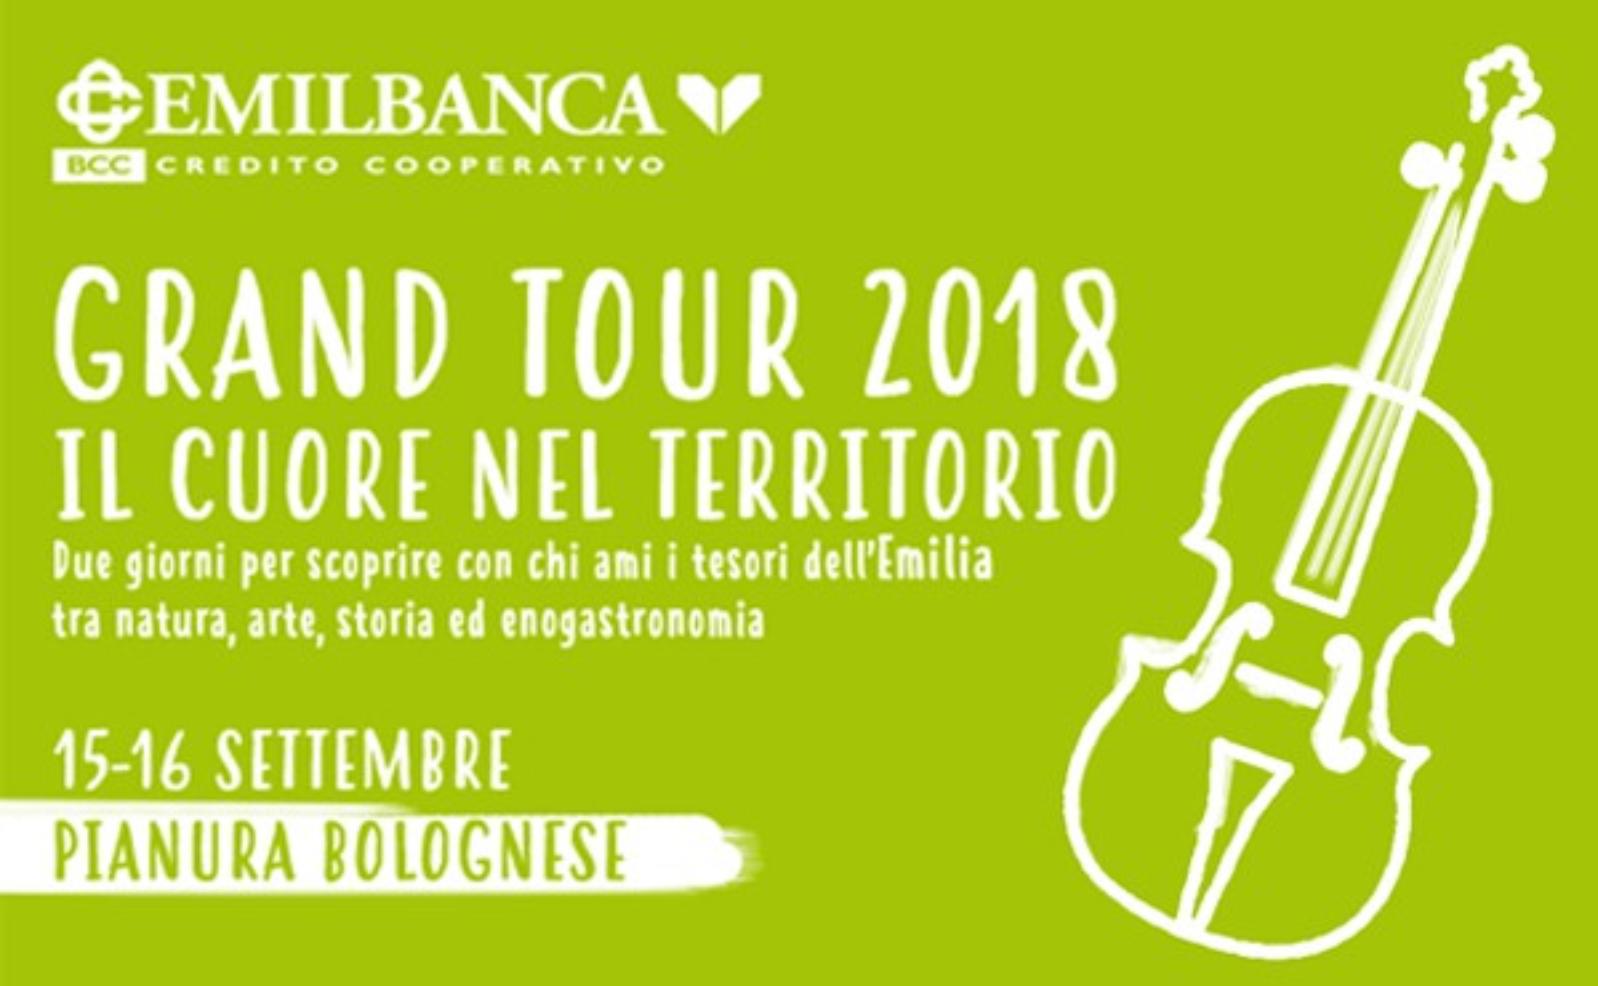 Grand Tour 2018 in Pianura